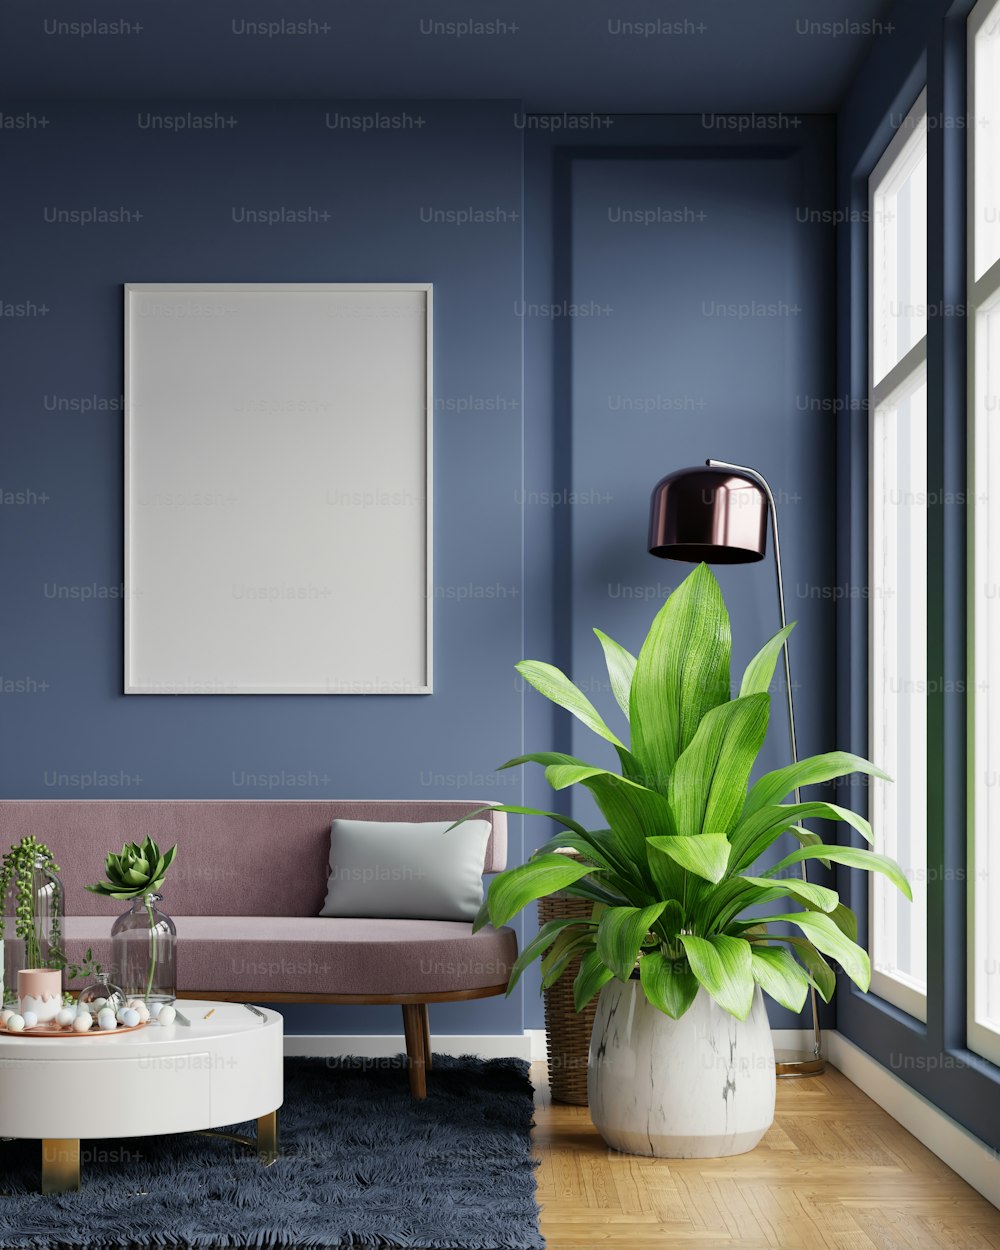 Modello di poster con cornici verticali su parete blu scuro vuota all'interno del soggiorno con divano in velluto rosa.3D rendering